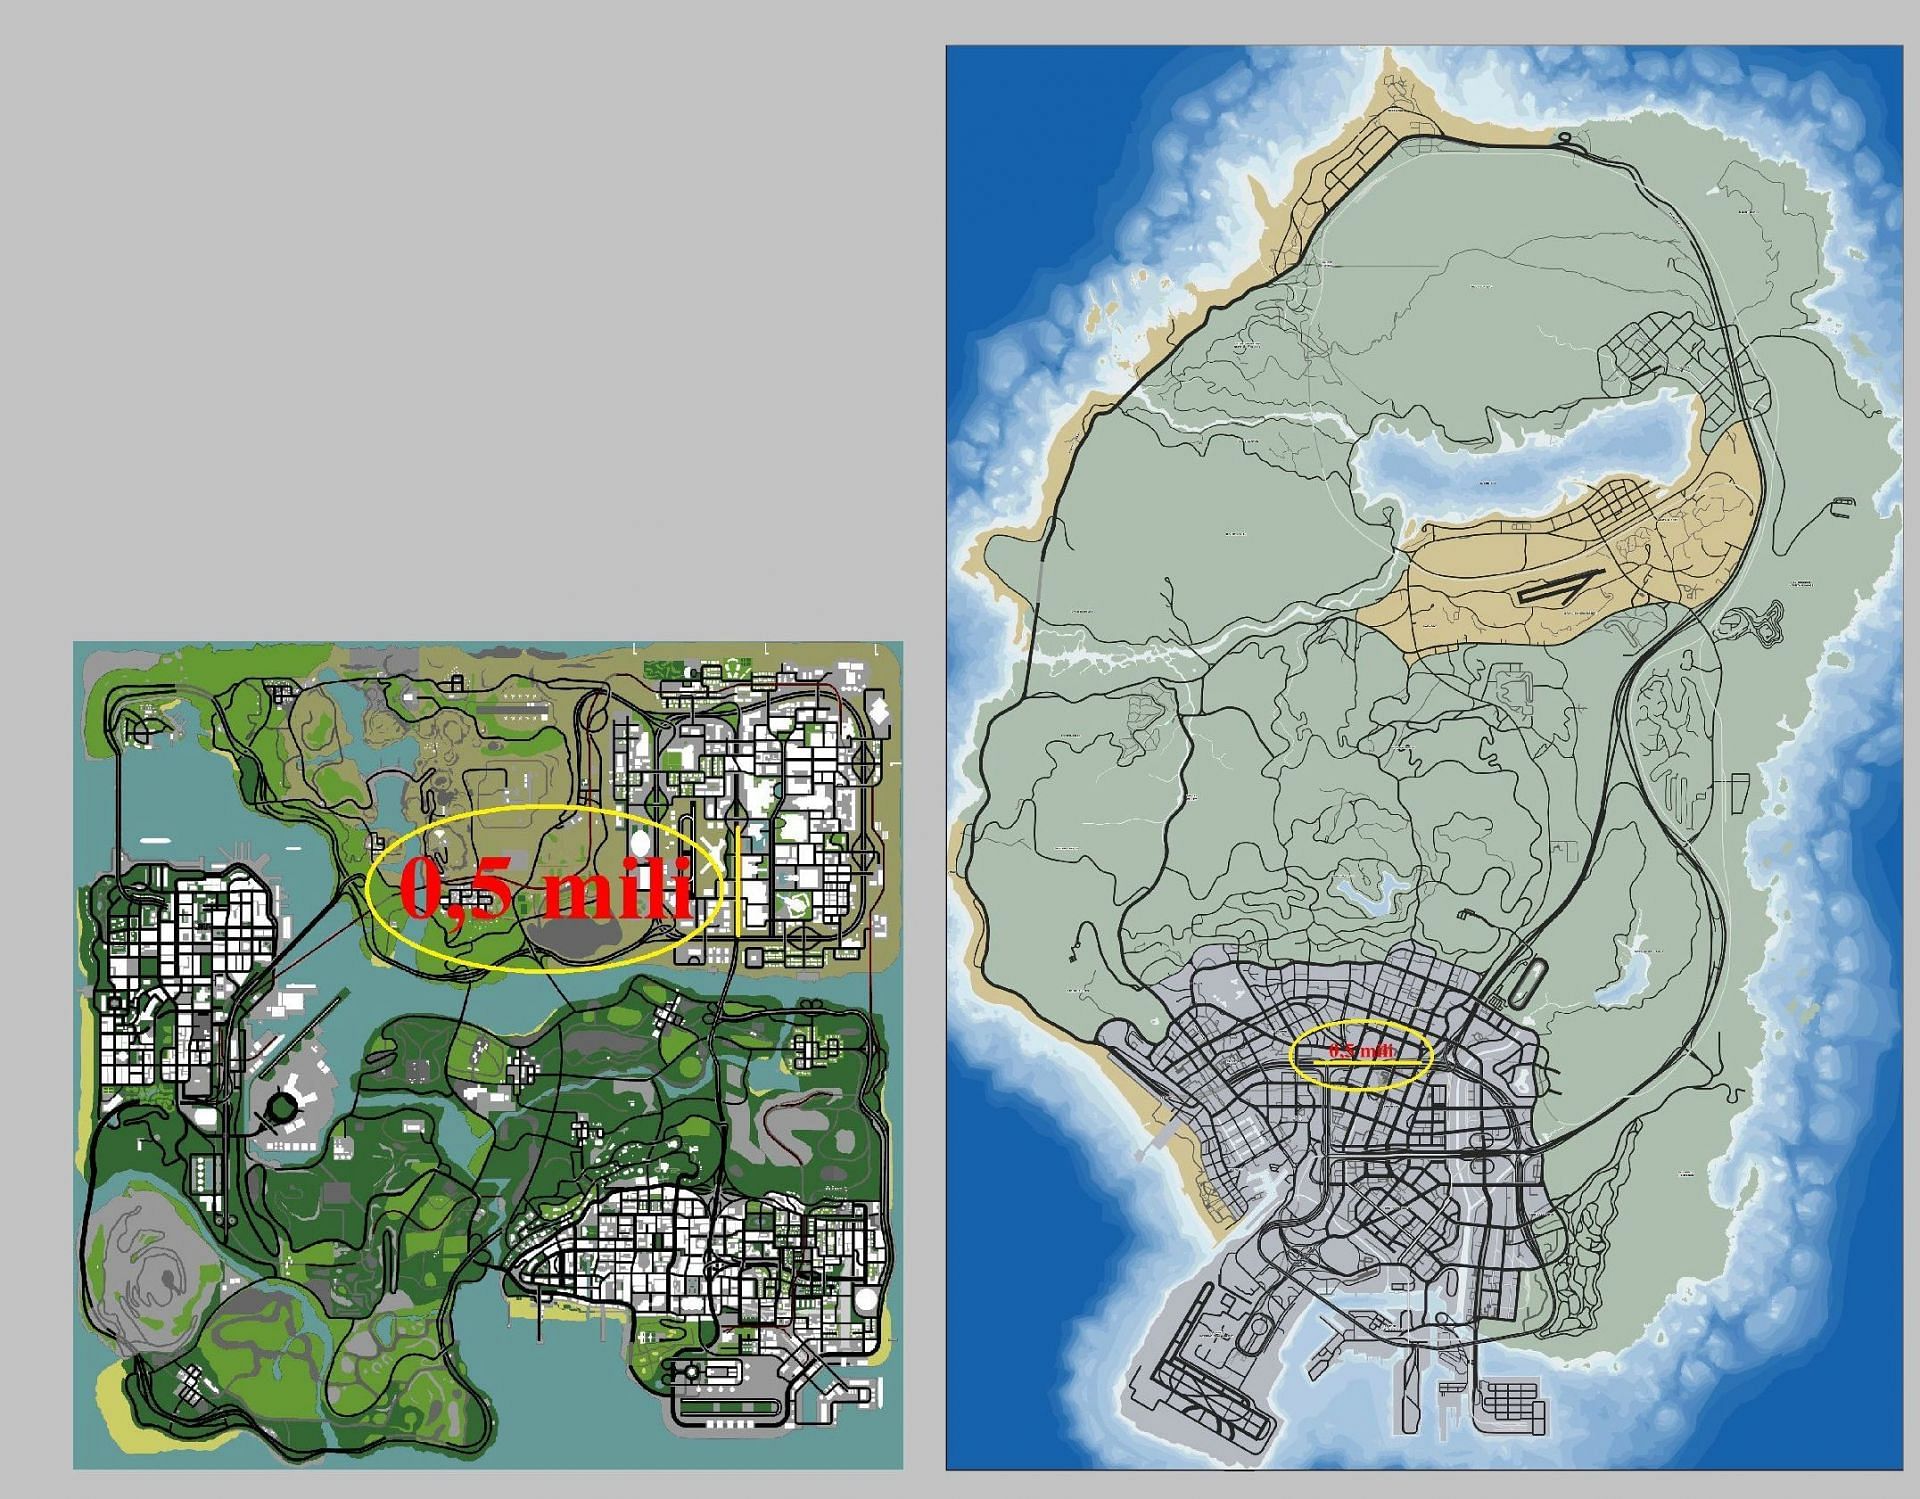 gta map size comparison old vs new｜TikTok Search